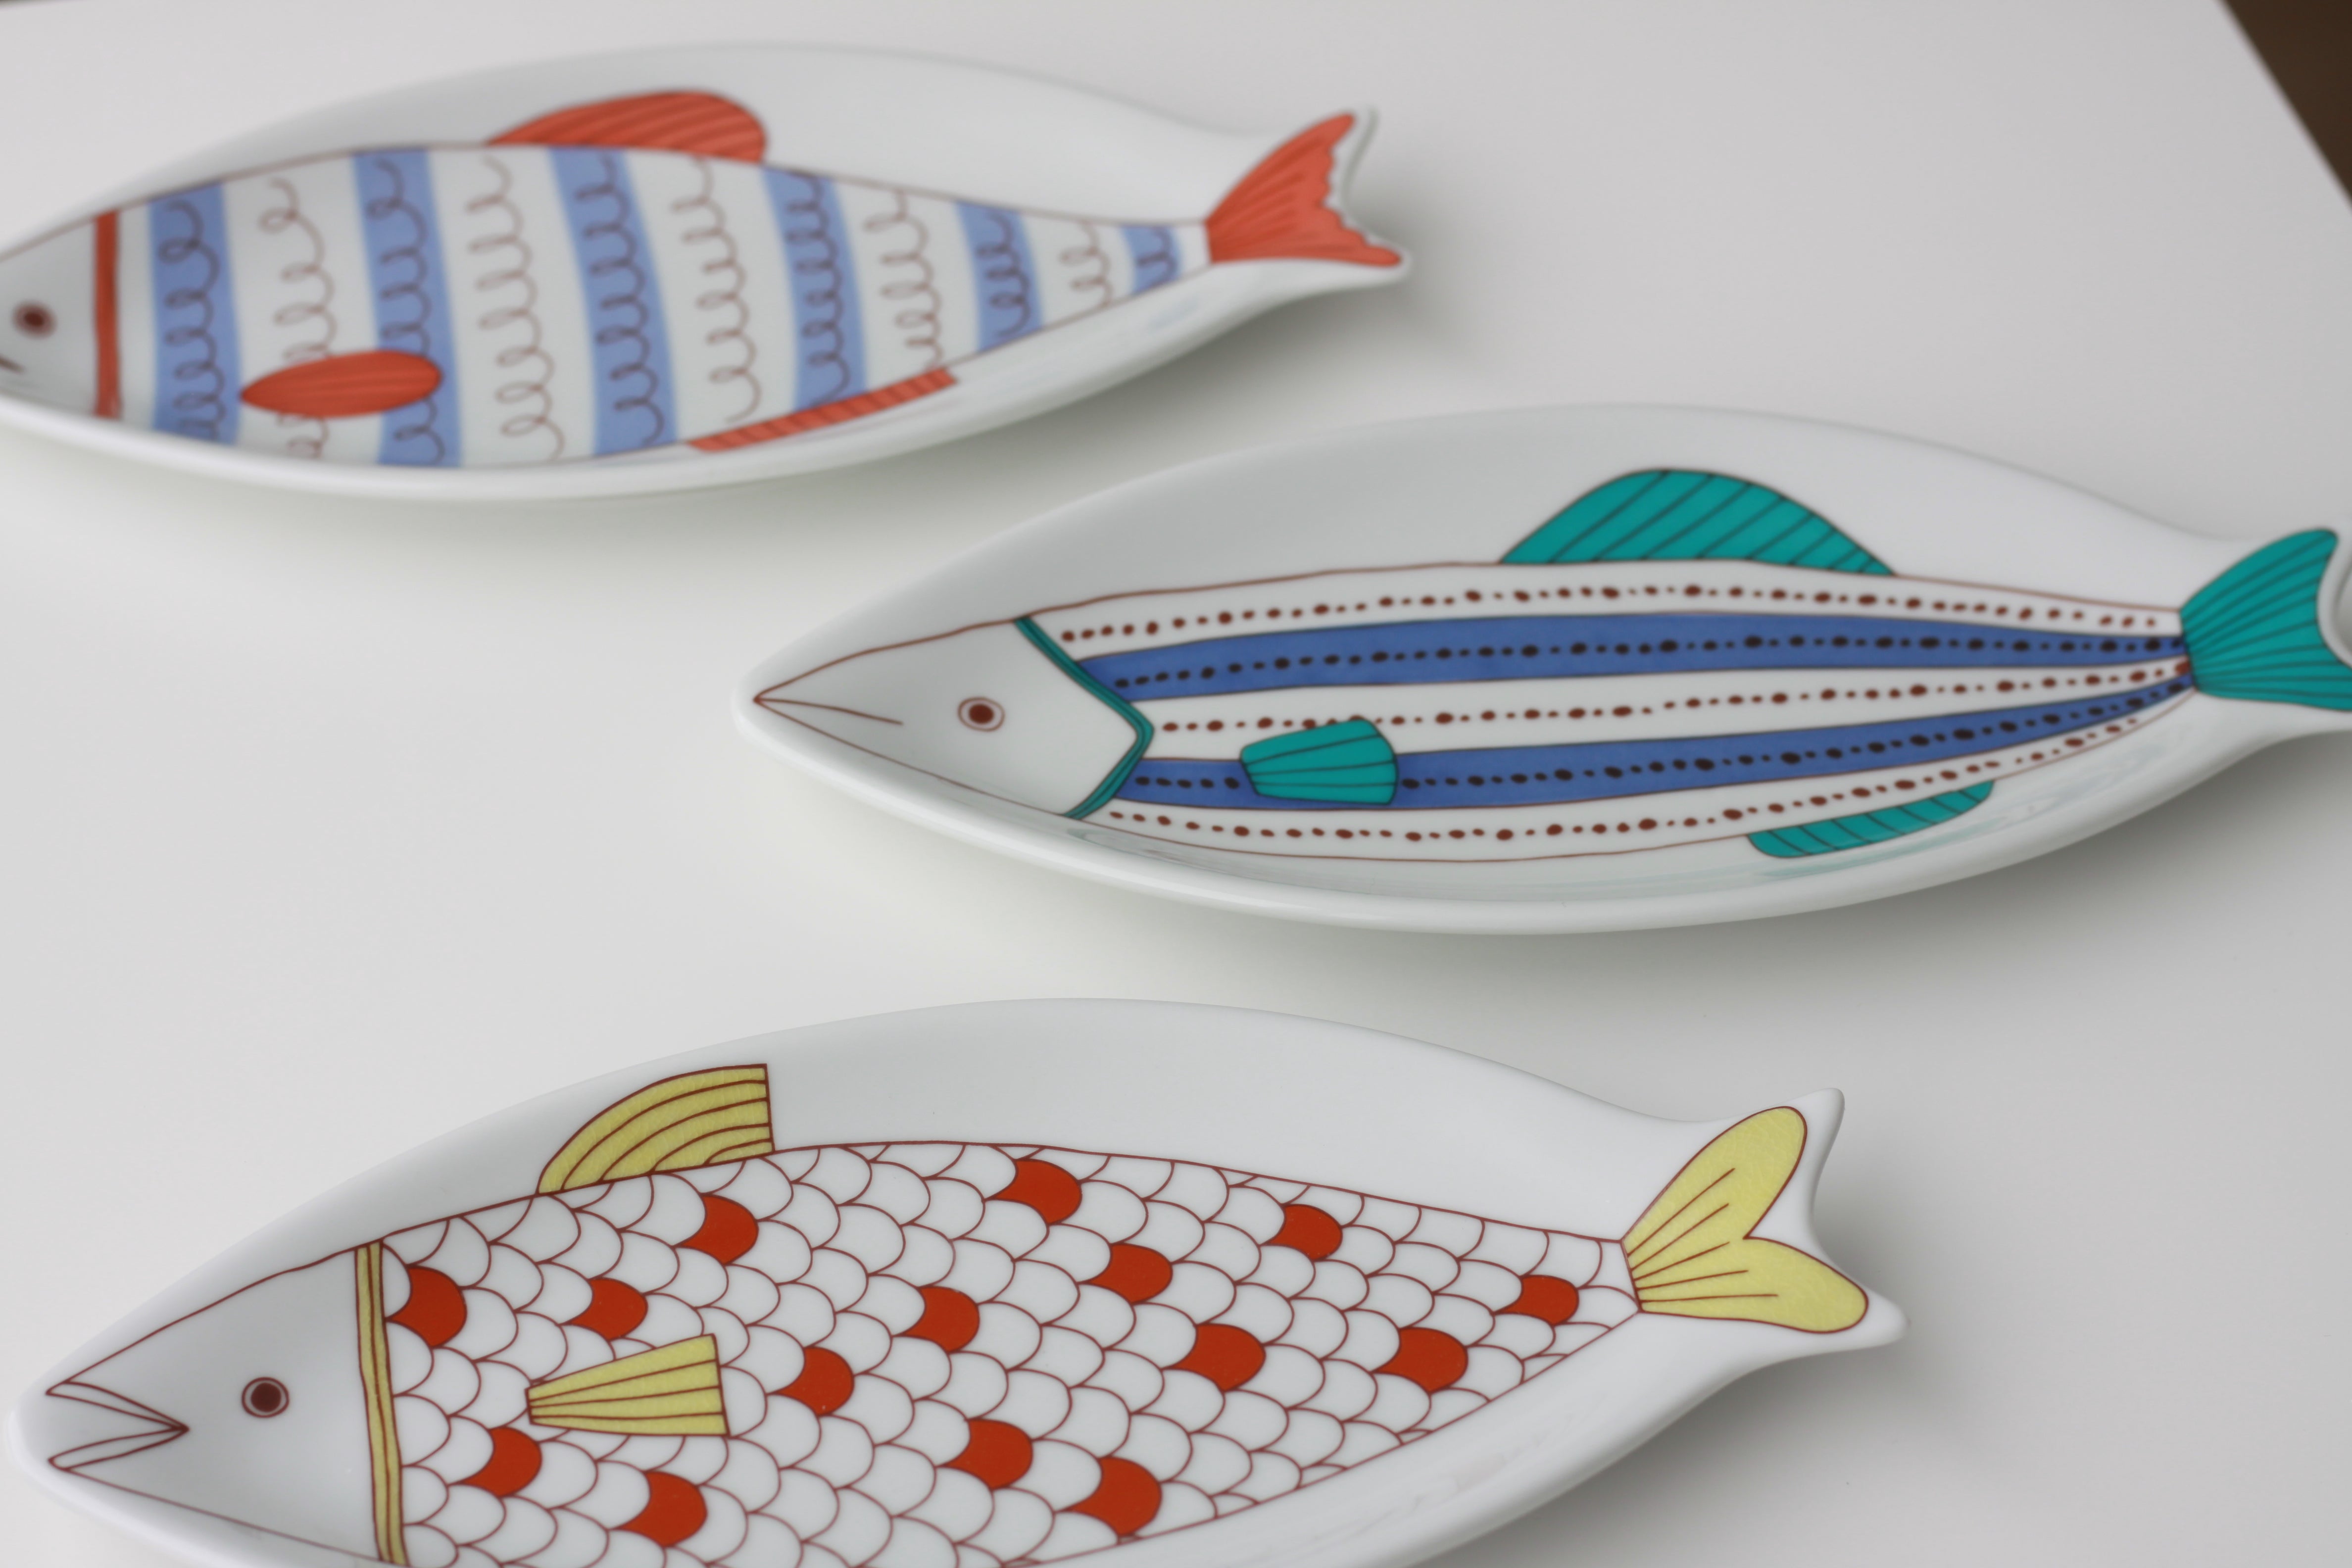 Harekutani Fish Plate - Red Tail